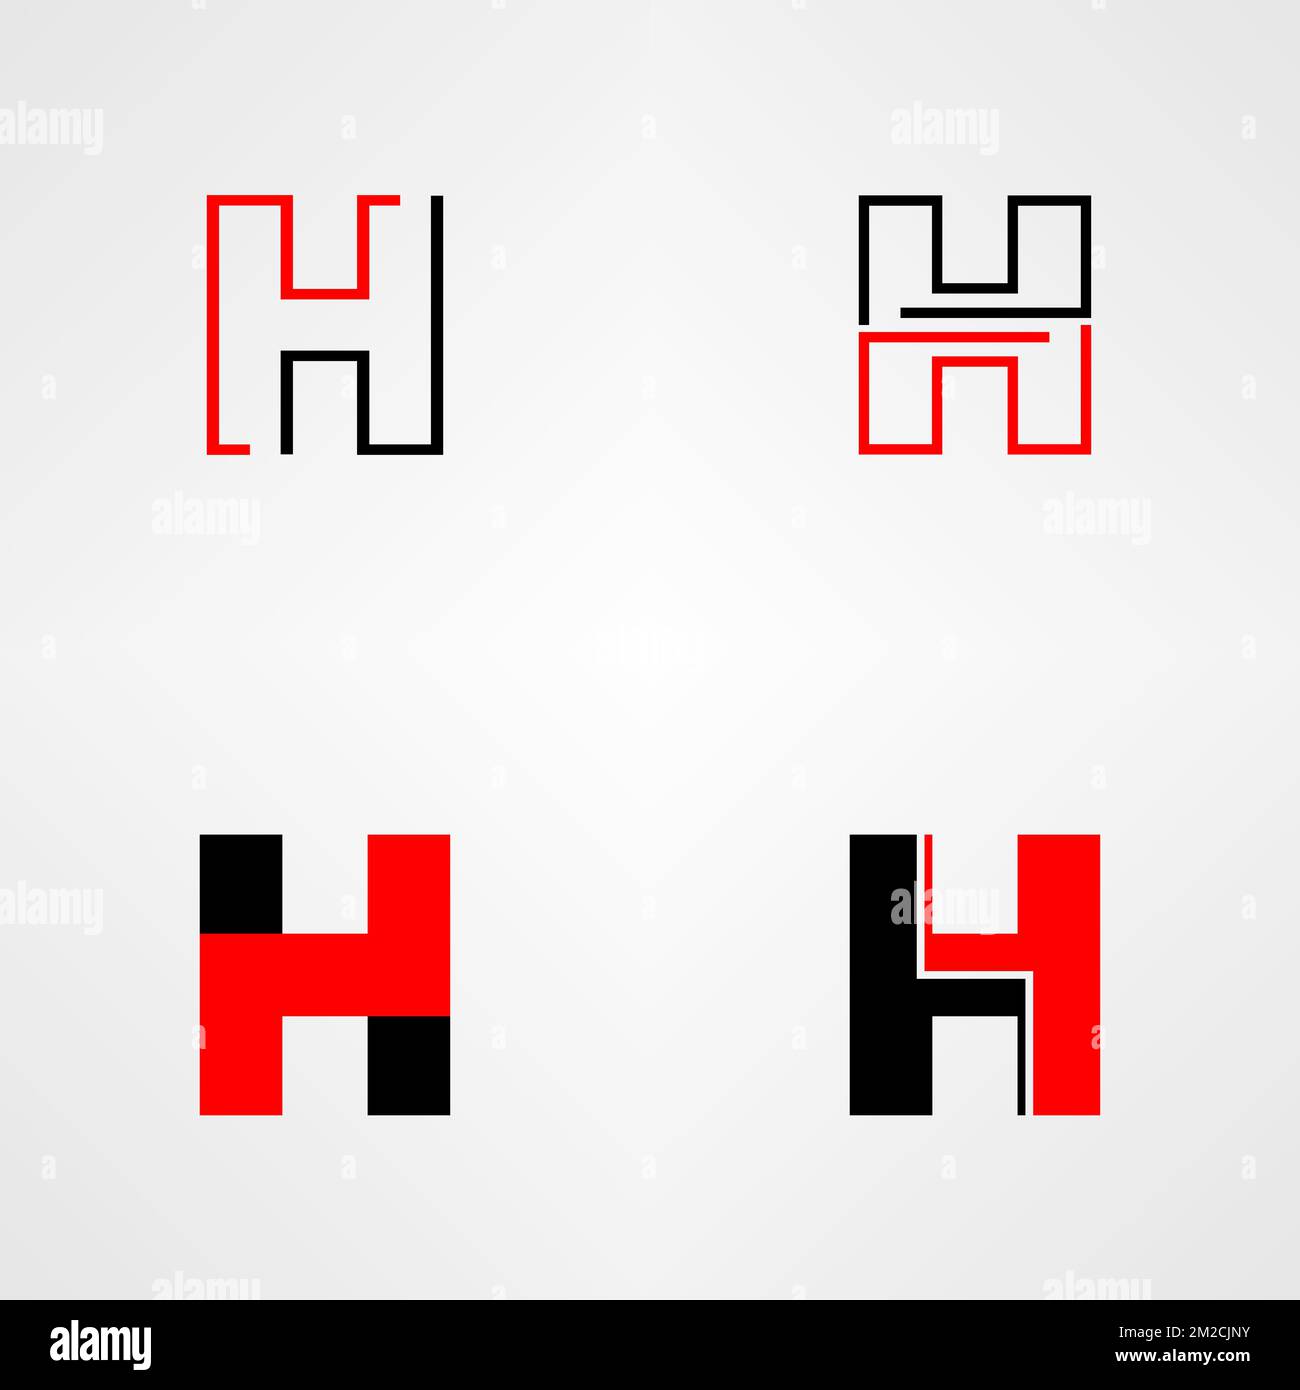 Lettre ou mot H police image graphique icône logo design abstrait concept vecteur stock. Peut être utilisé comme symbole associé à l'initiale ou au monogramme Illustration de Vecteur